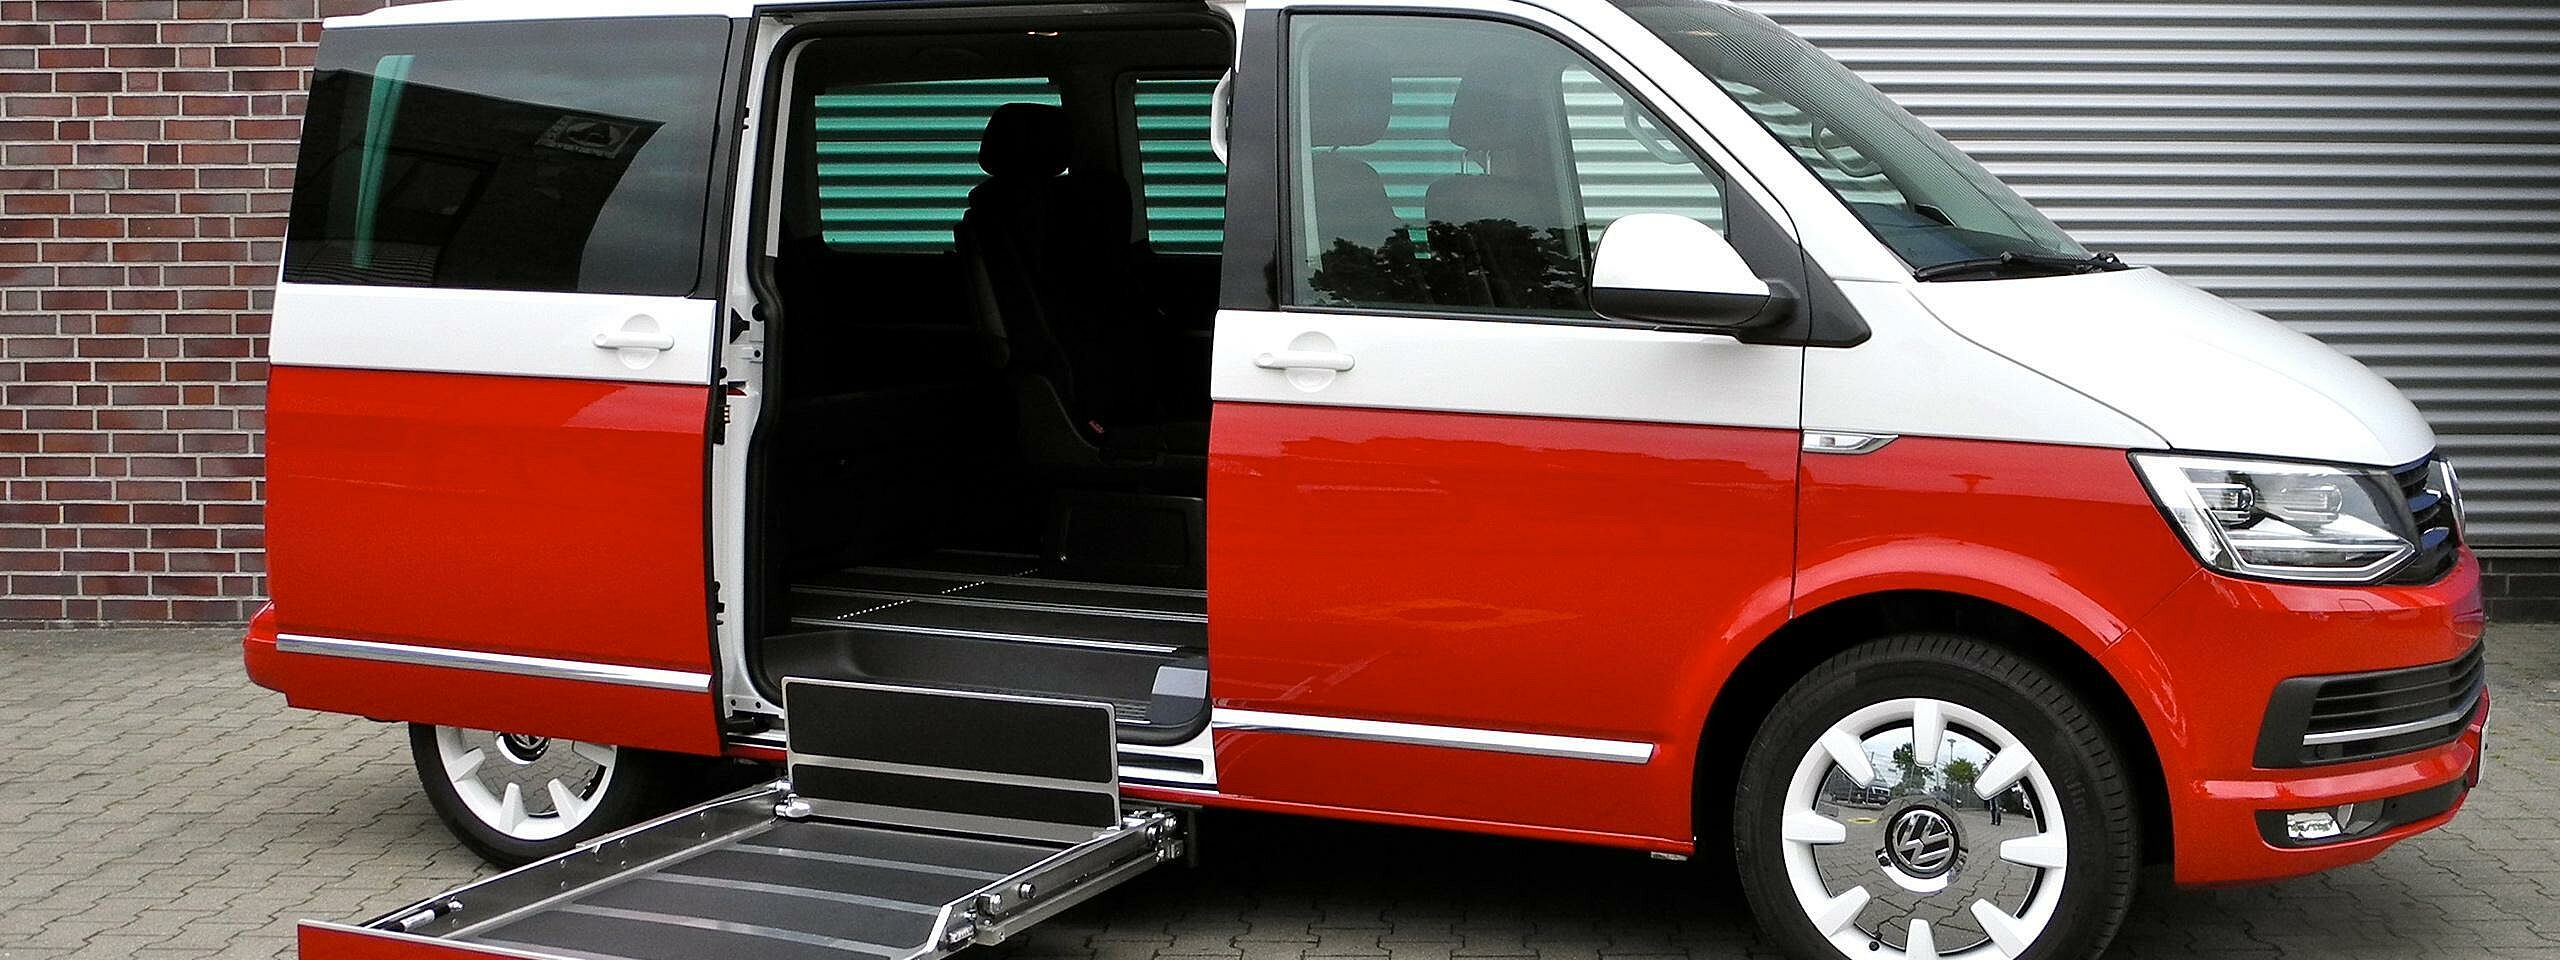 Behindertengerechtes Auto der Firma Gross am Beispiel eines T6 Multivan von VW mit Kasettenlift